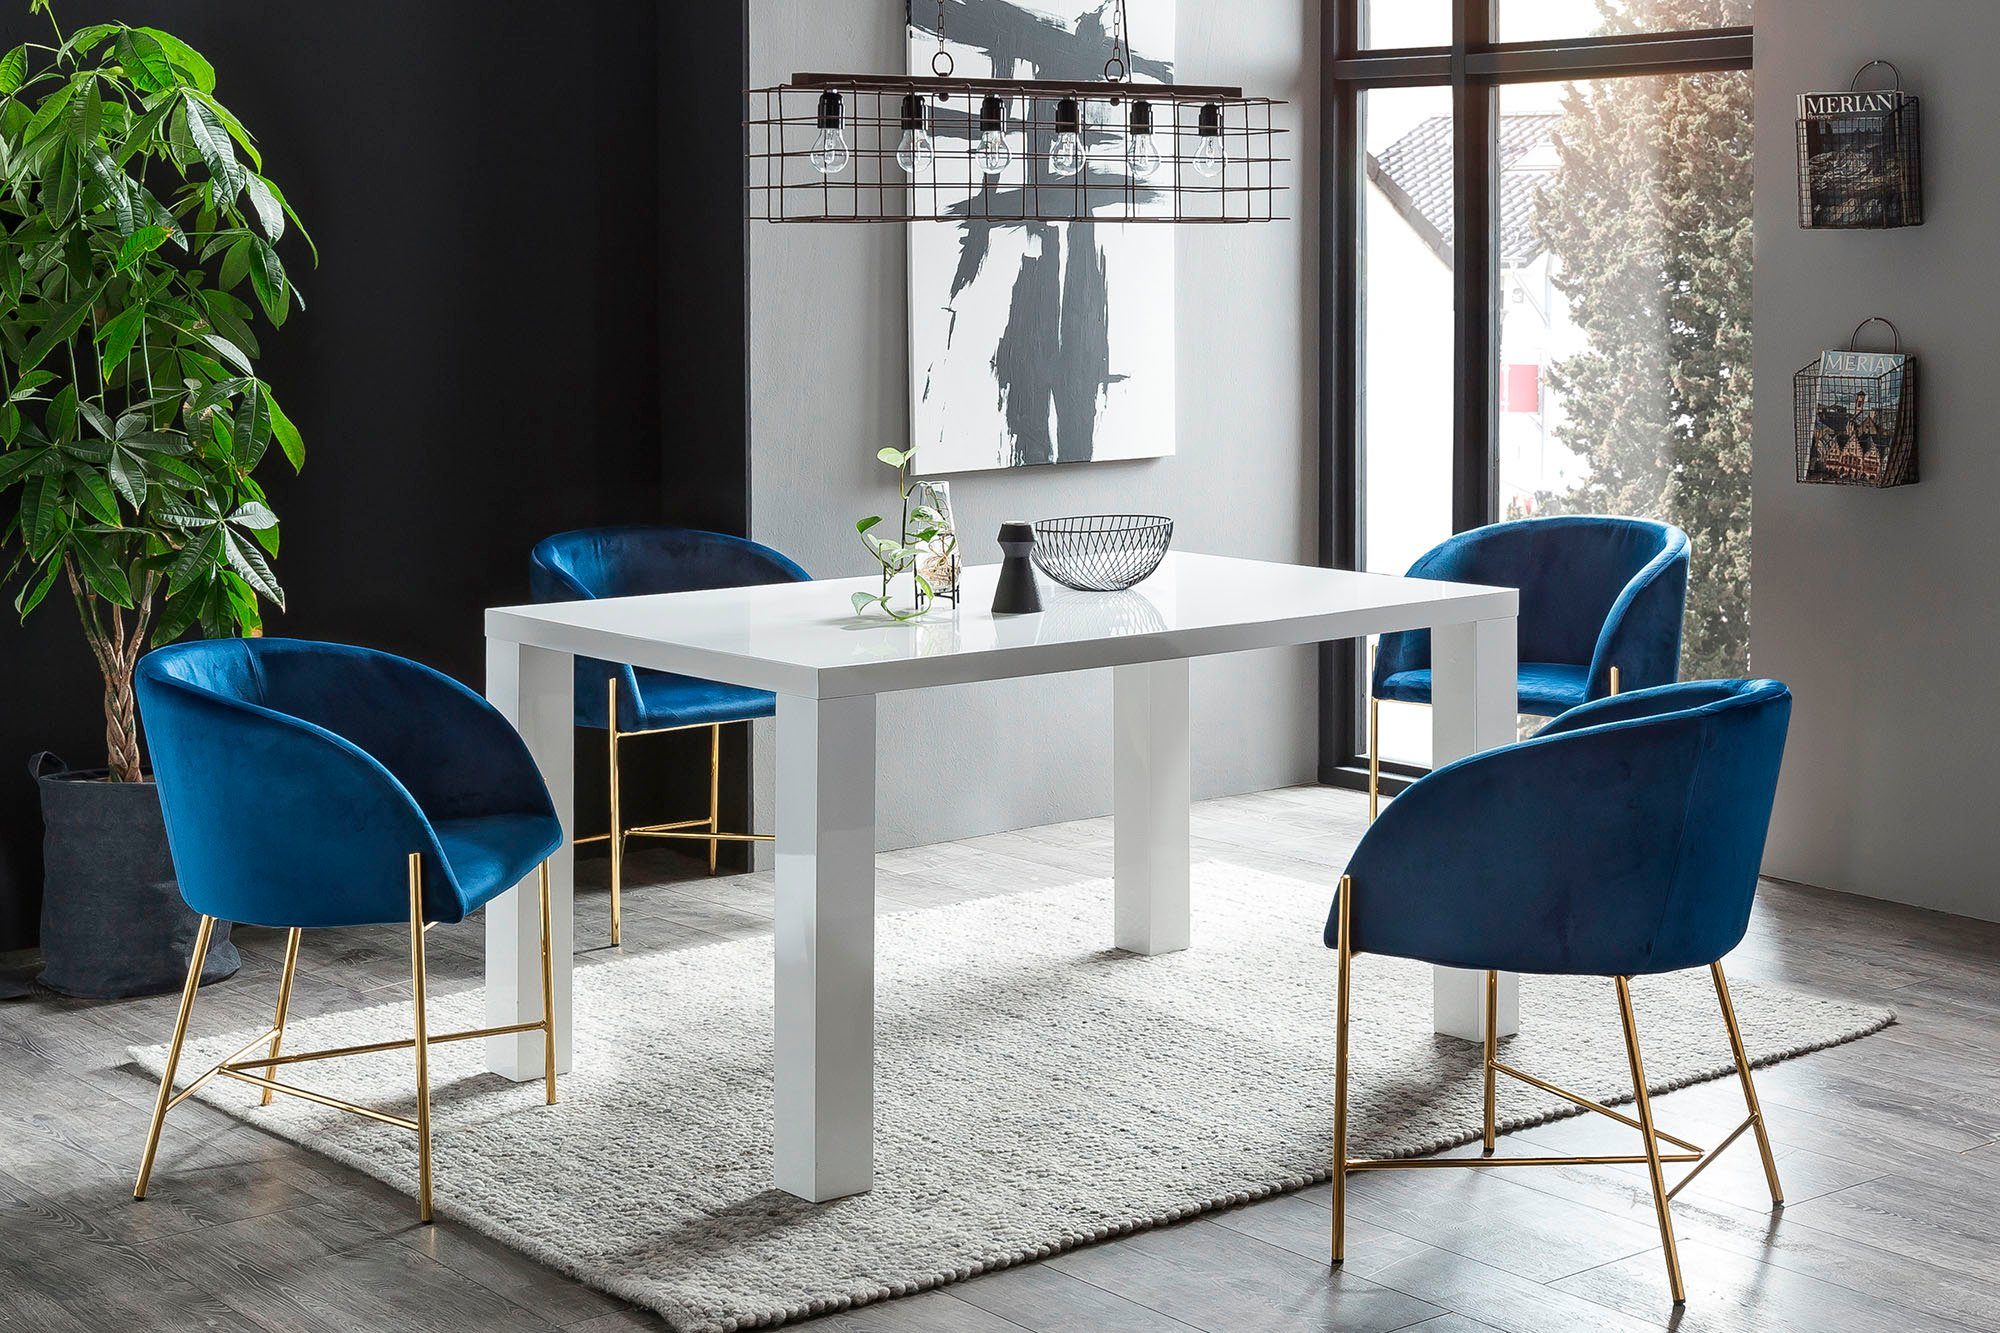 SalesFever Eethoek bestaand uit 4 moderne beklede stoelen en een 160 cm brede tafel (set, 5-delig)